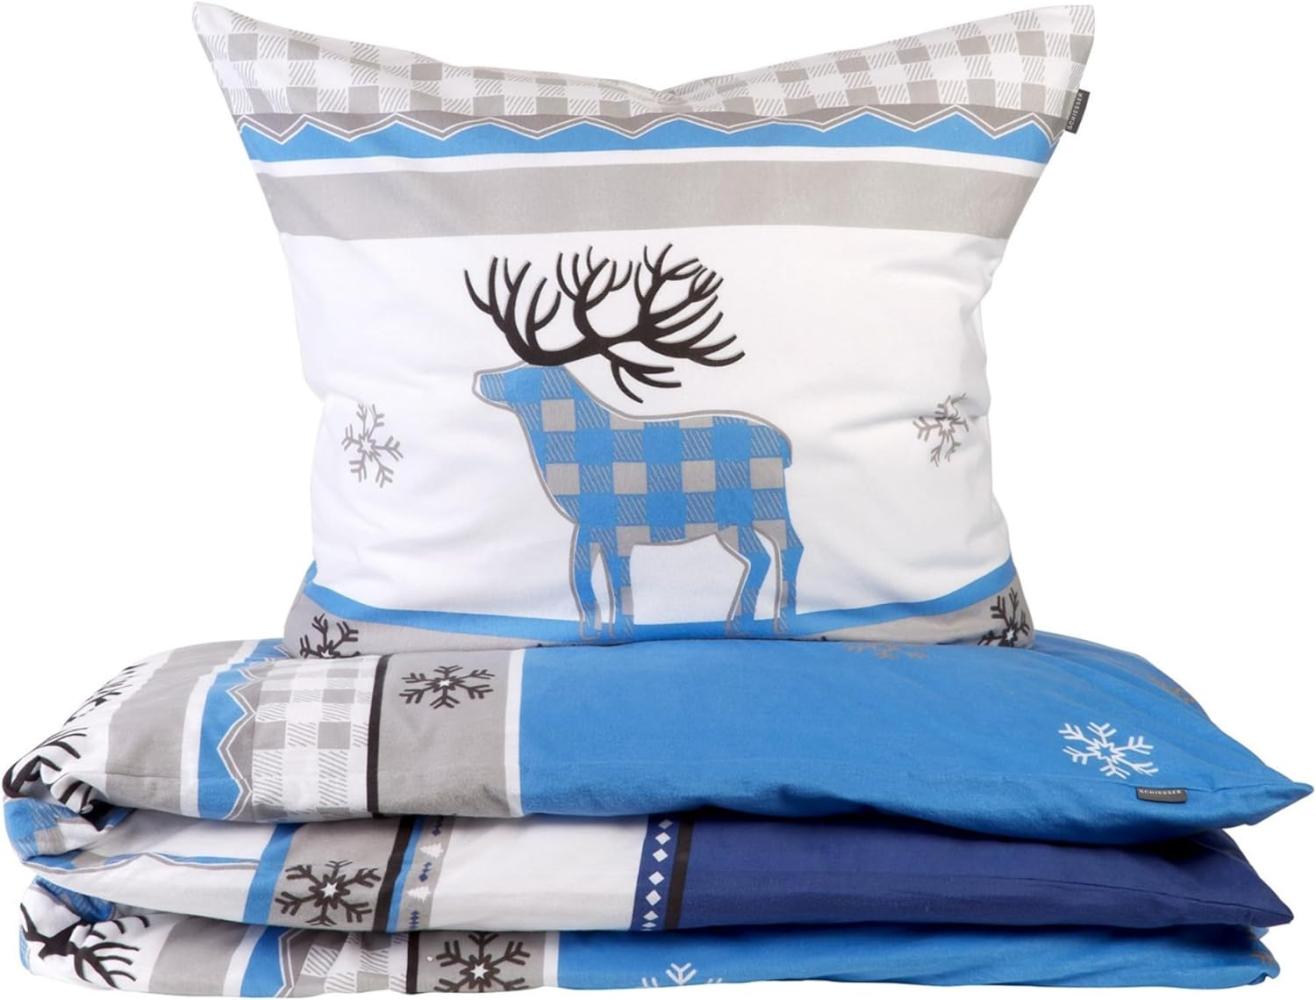 Schiesser Feinbiber Bettwäsche Set Verda aus weicher, wärmender Baumwolle, Farbe:Blau und Grau, Größe:135 cm x 200 cm Bild 1